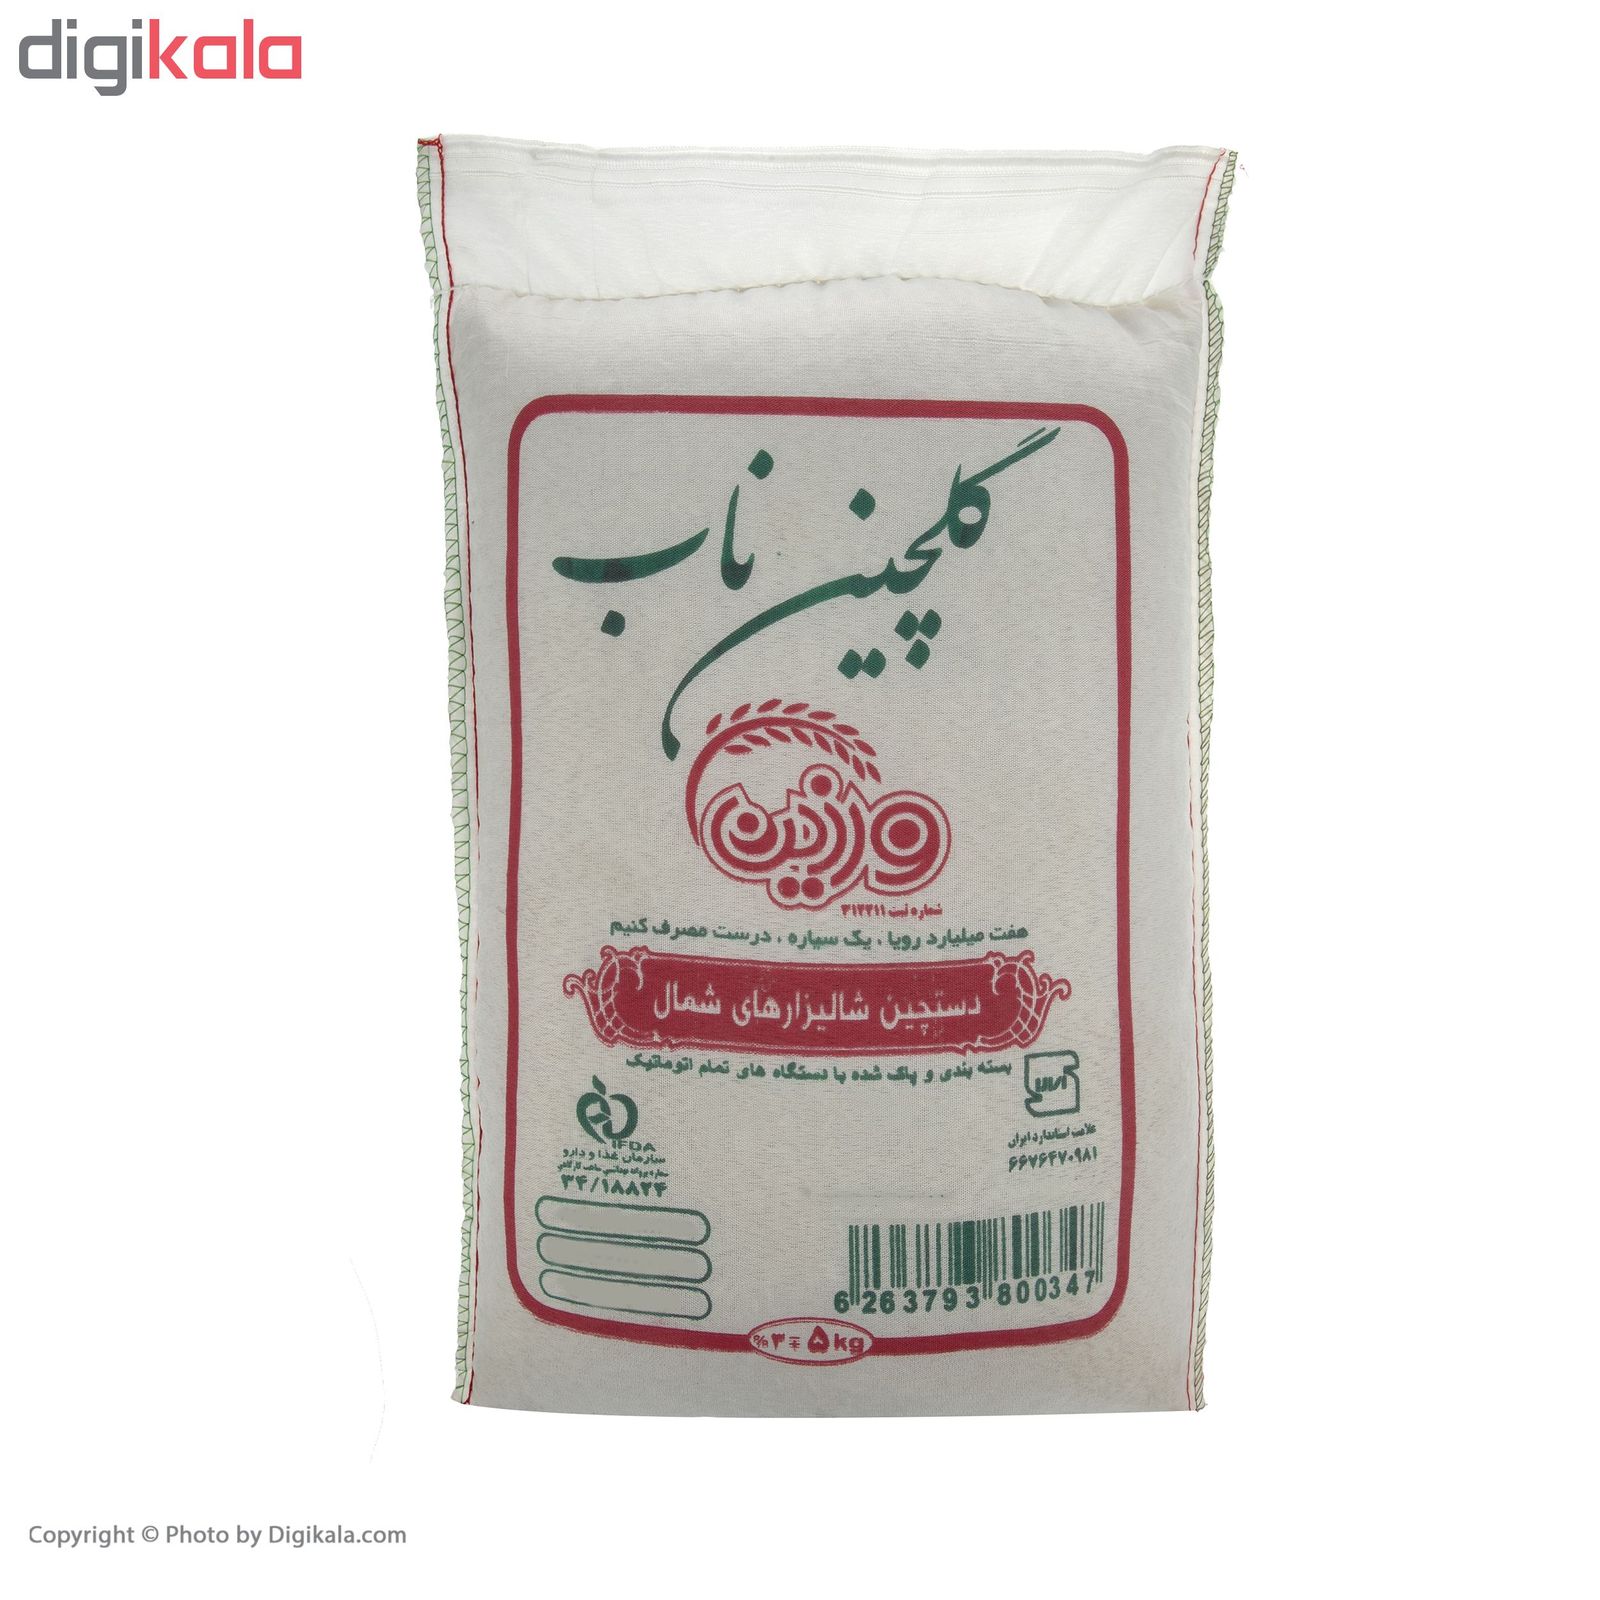 برنج صدری گلچین ناب ورزین - 5 کیلوگرم